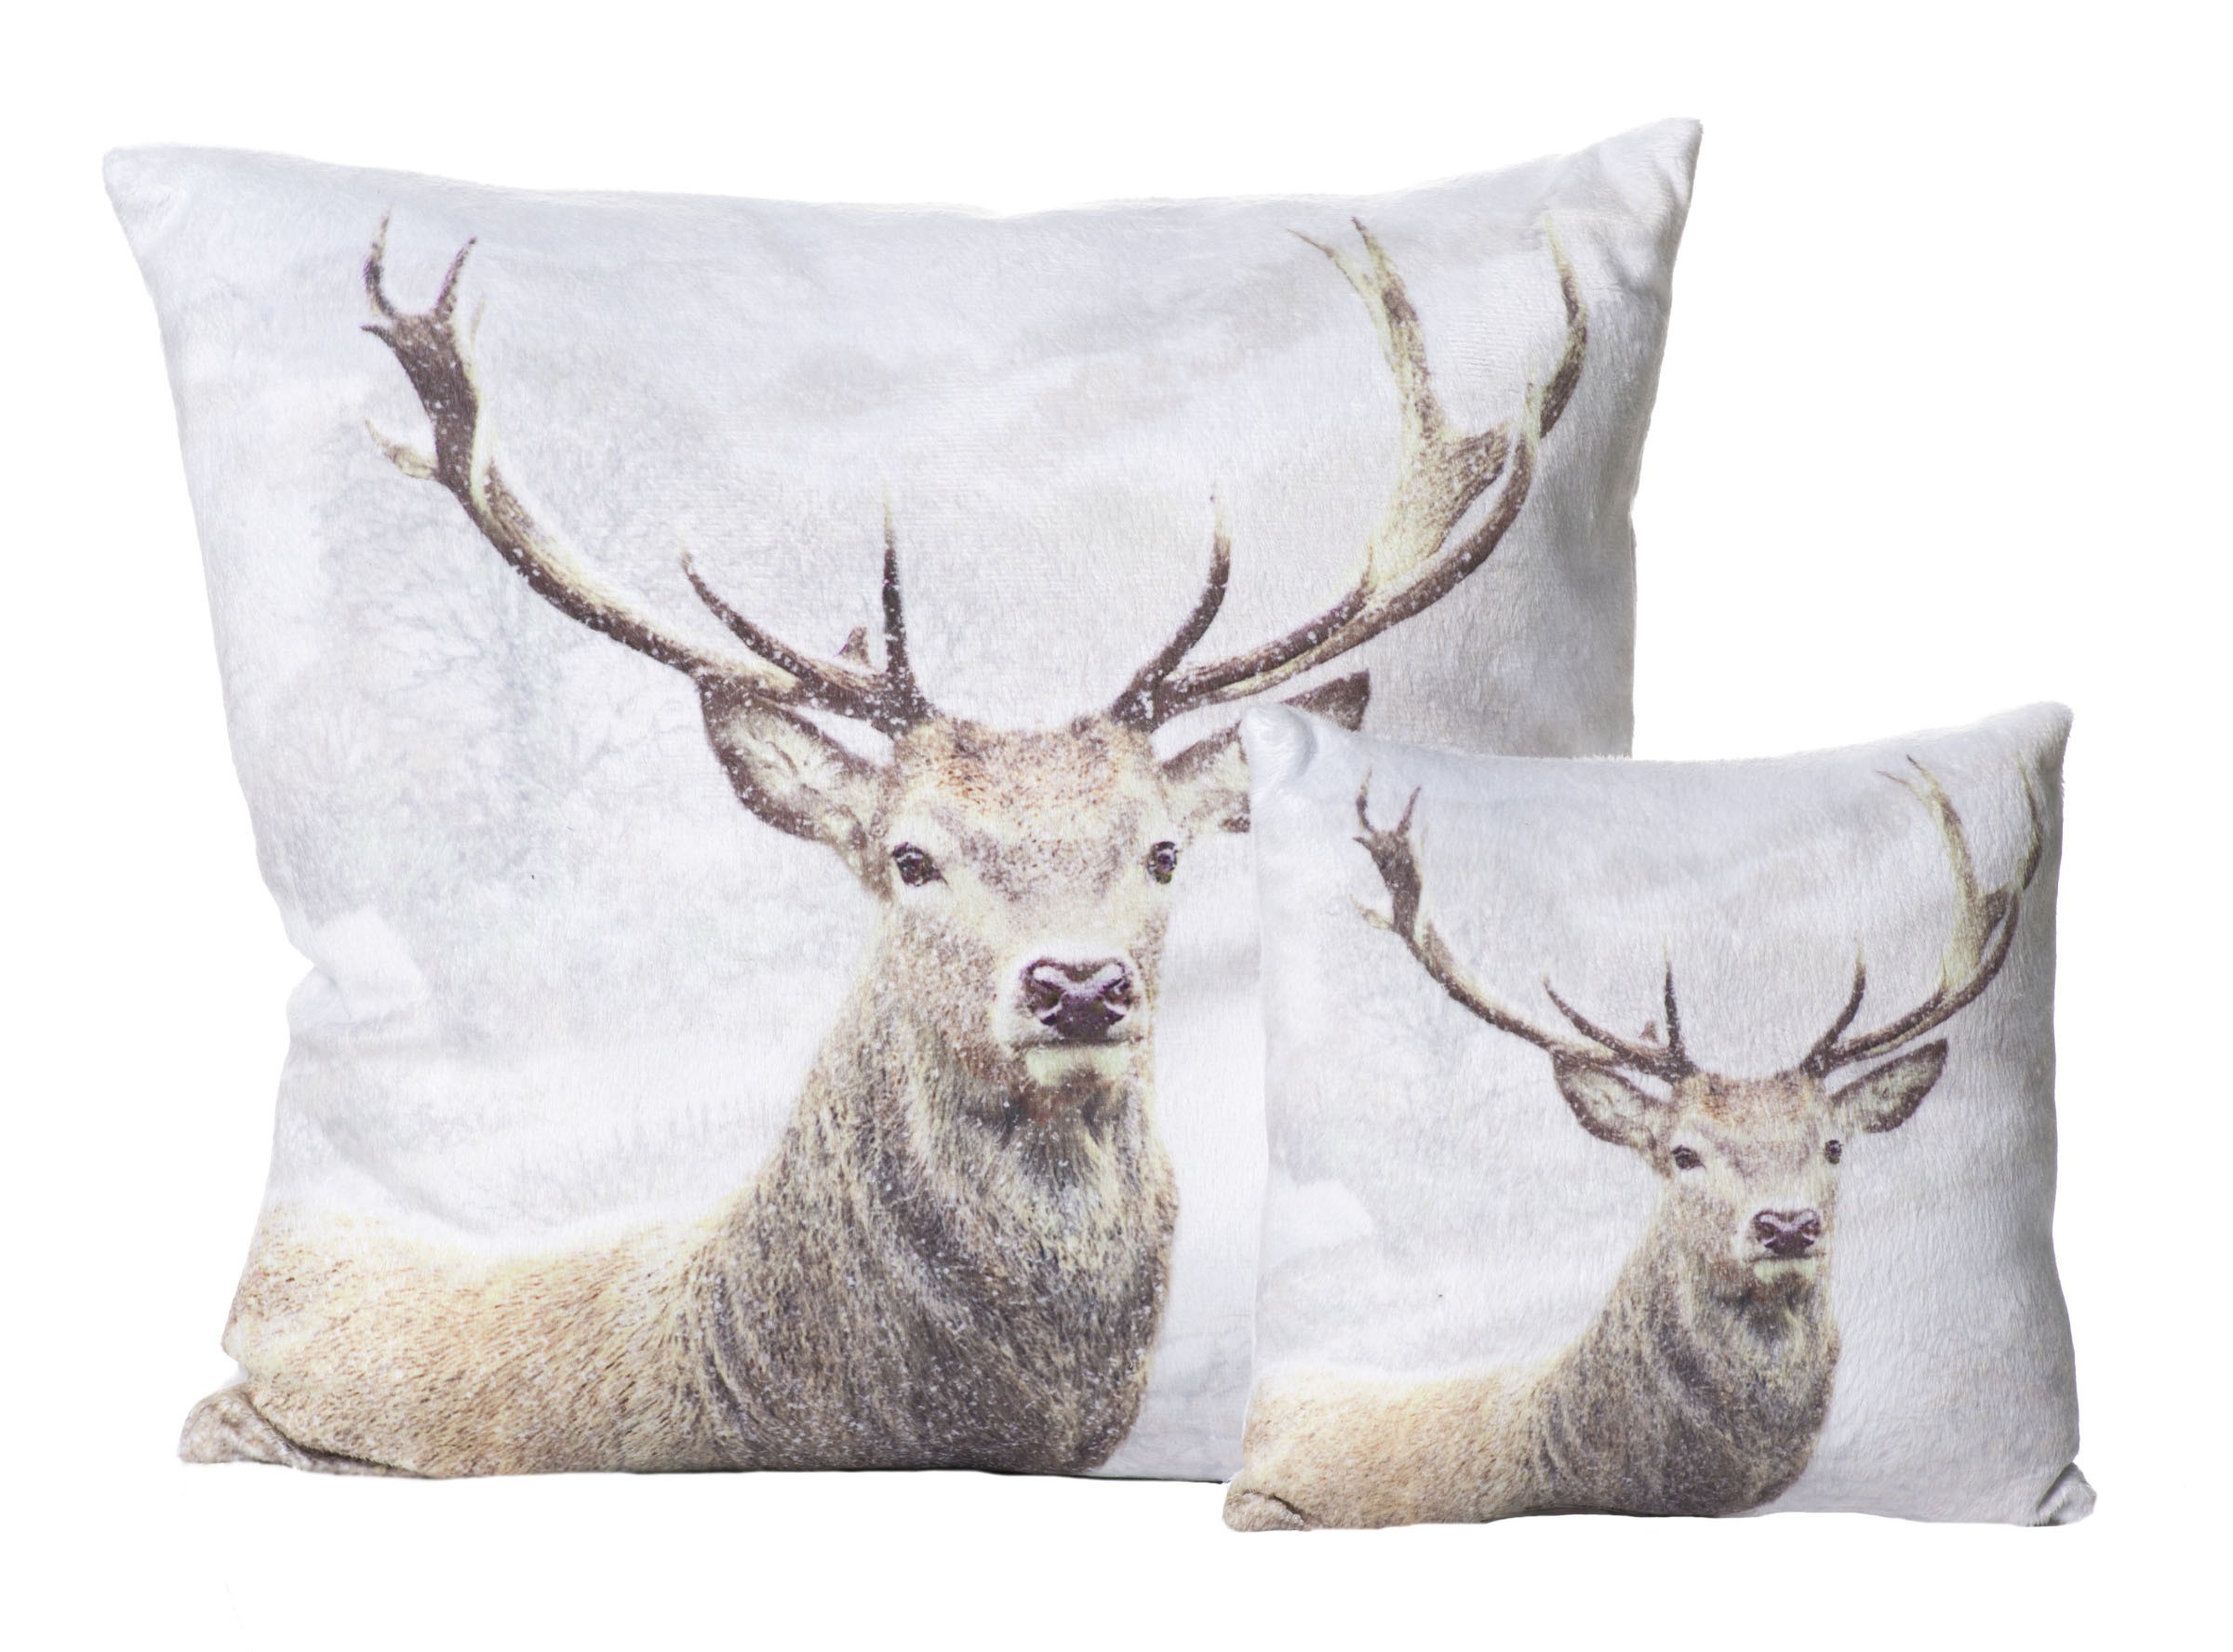 Winter cushions - reindeer.jpg